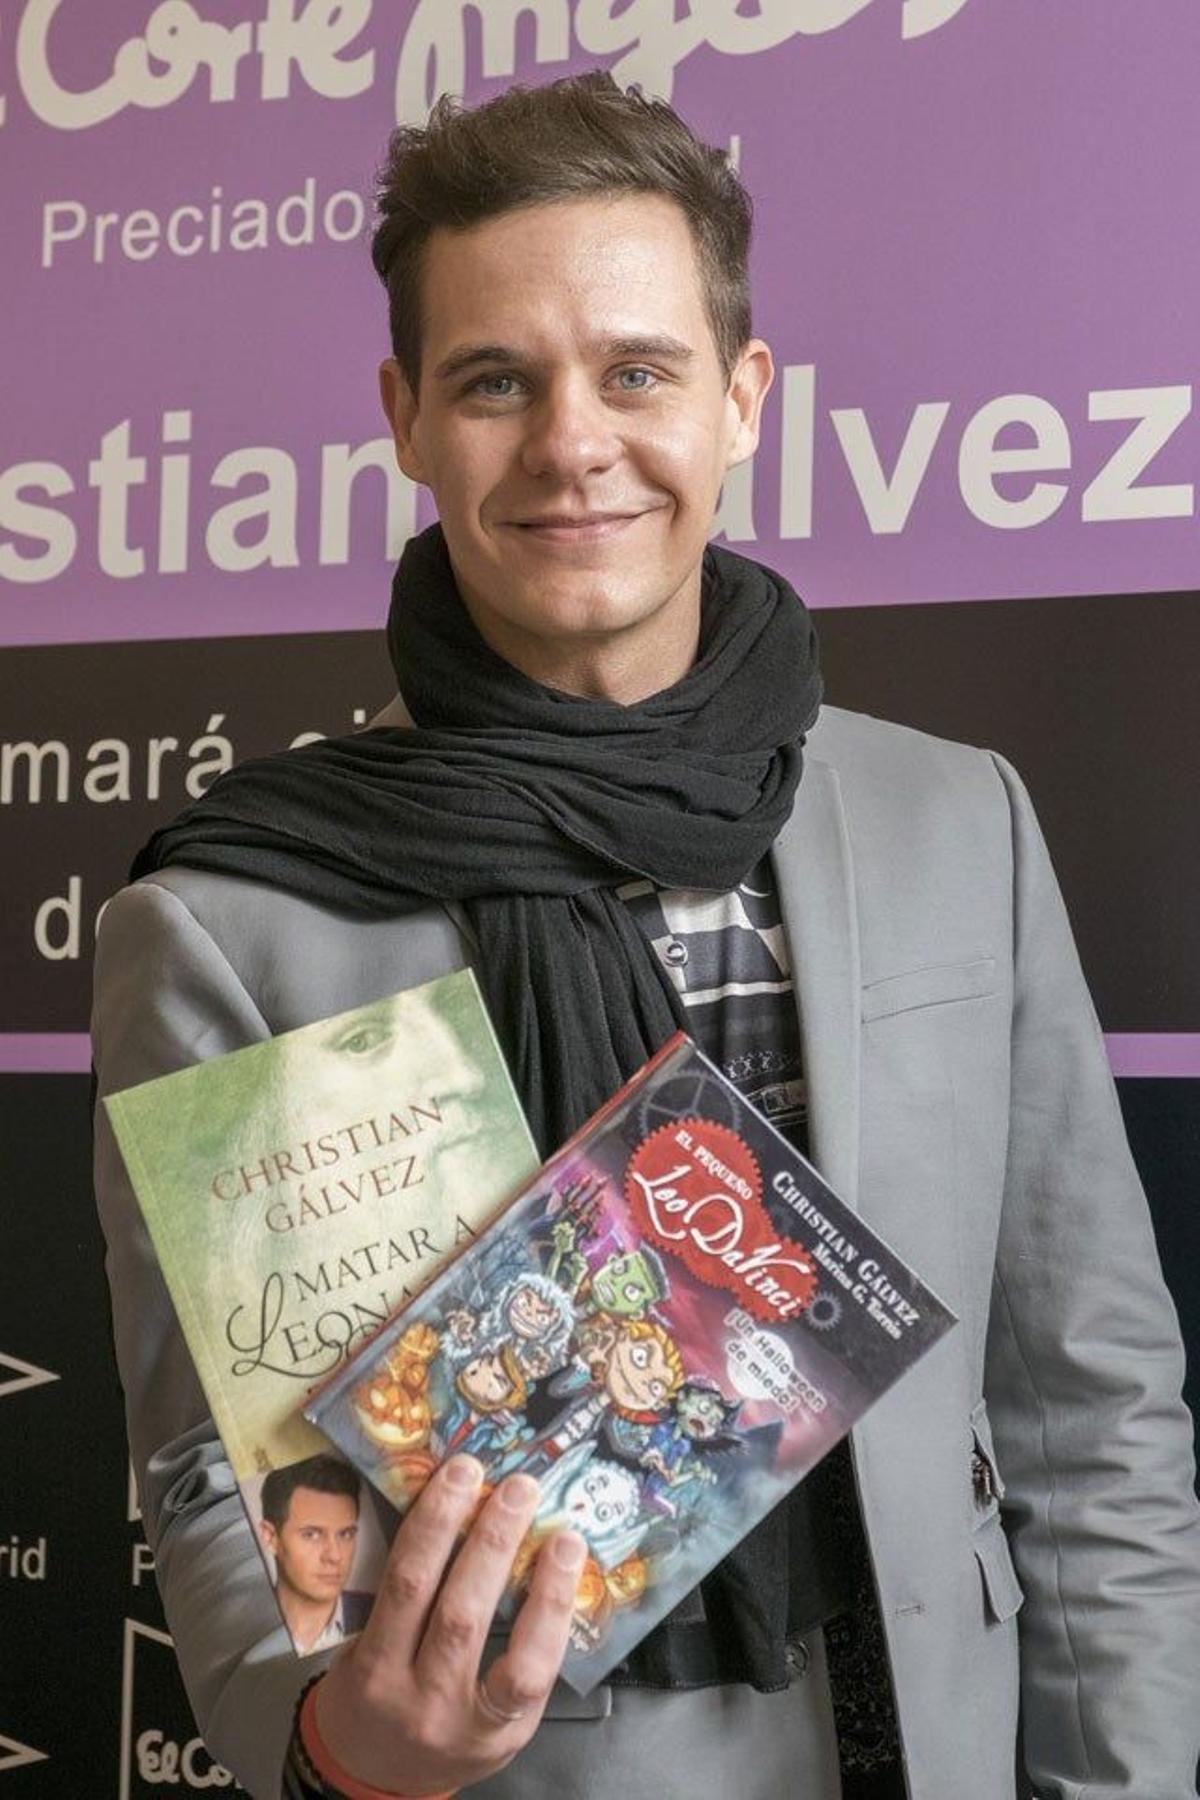 Christian Galvez, antes de firmas sus libros Matar a Leonardo da Vinci, en versión adulta e infantil.